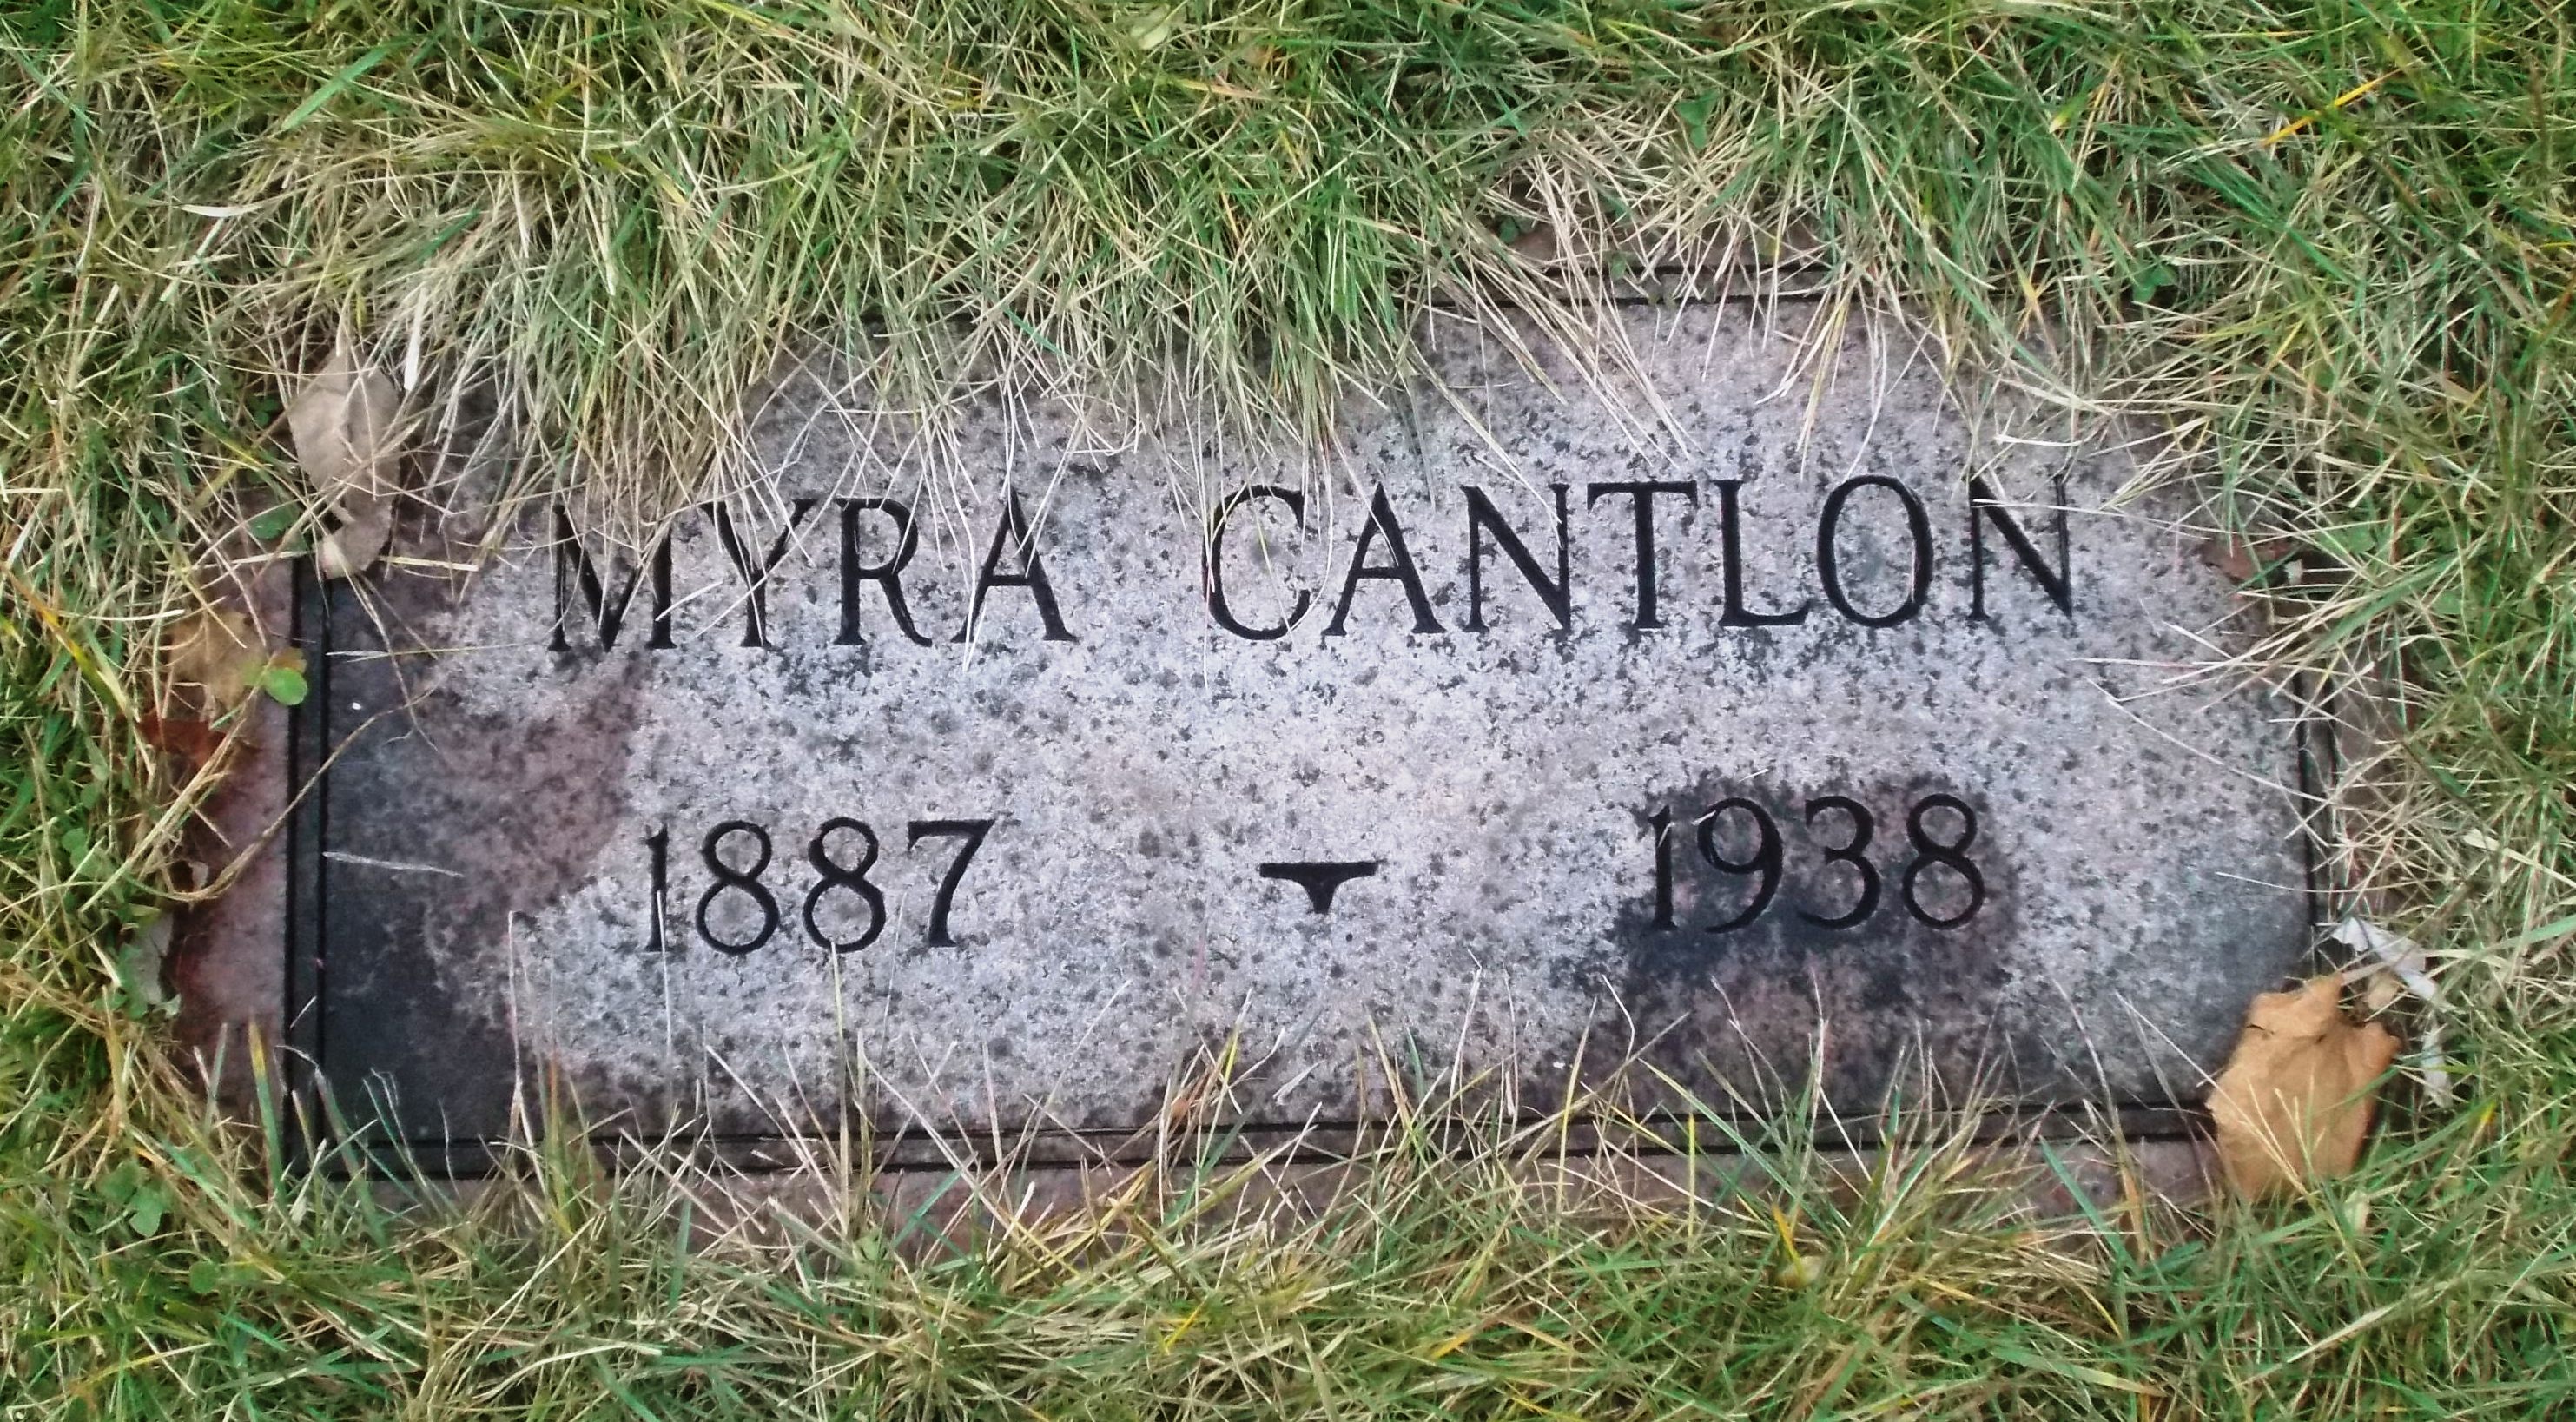 Myra Cantlon